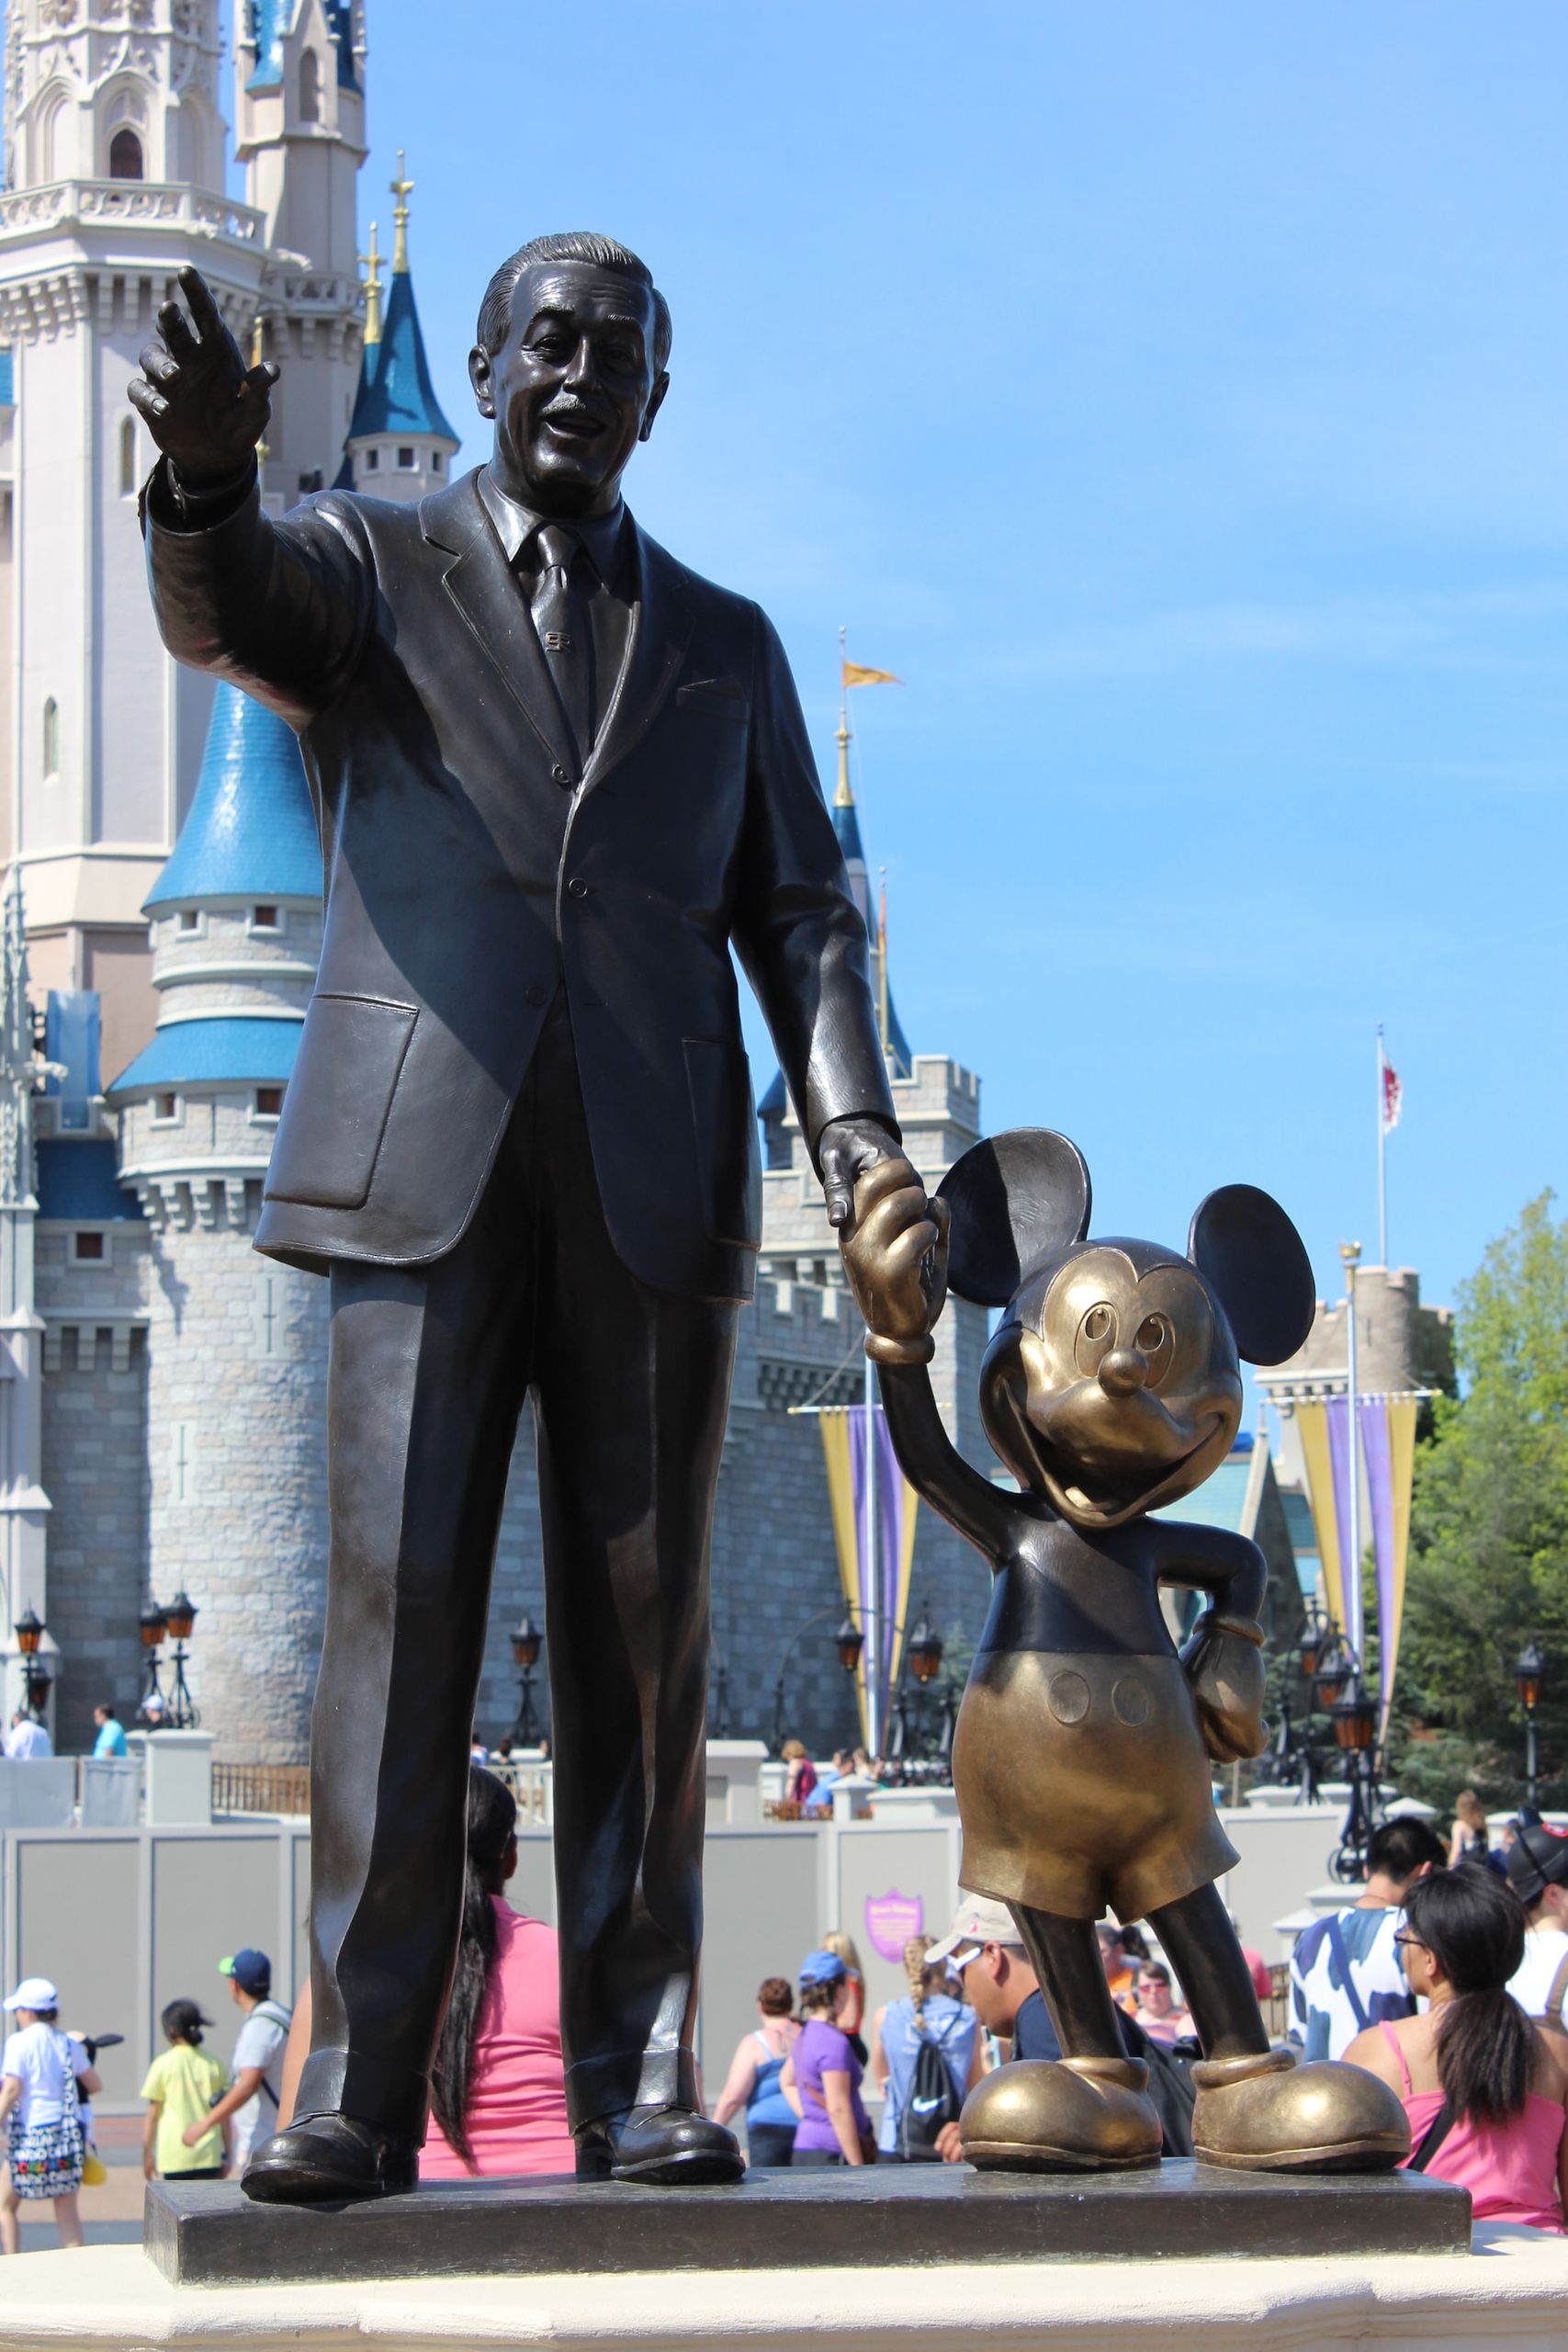 I 100 anni della Disney, tra episodi di razzismo, sessismo e lotte sindacali - immagine 4